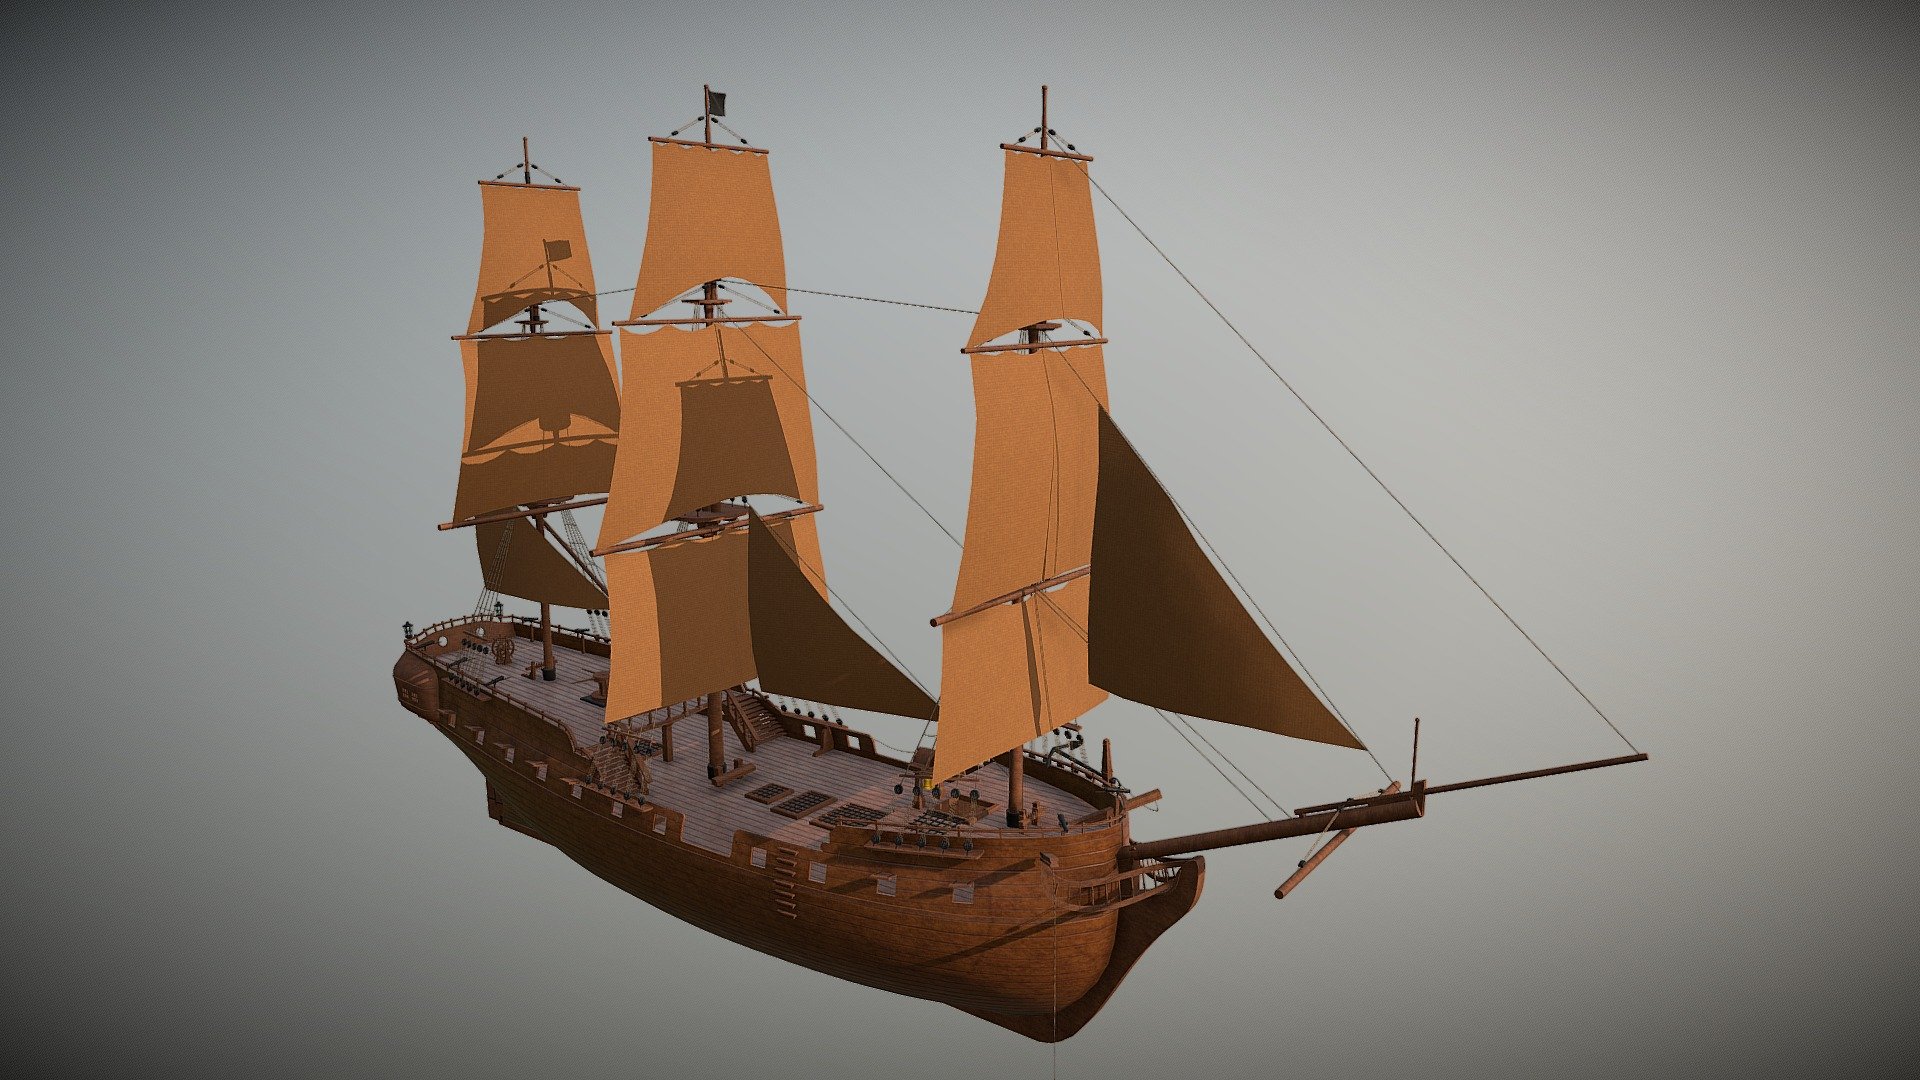 pirate-ship-3d-model-by-yann-chan-chit-sang-yannccs-1301d37-sketchfab